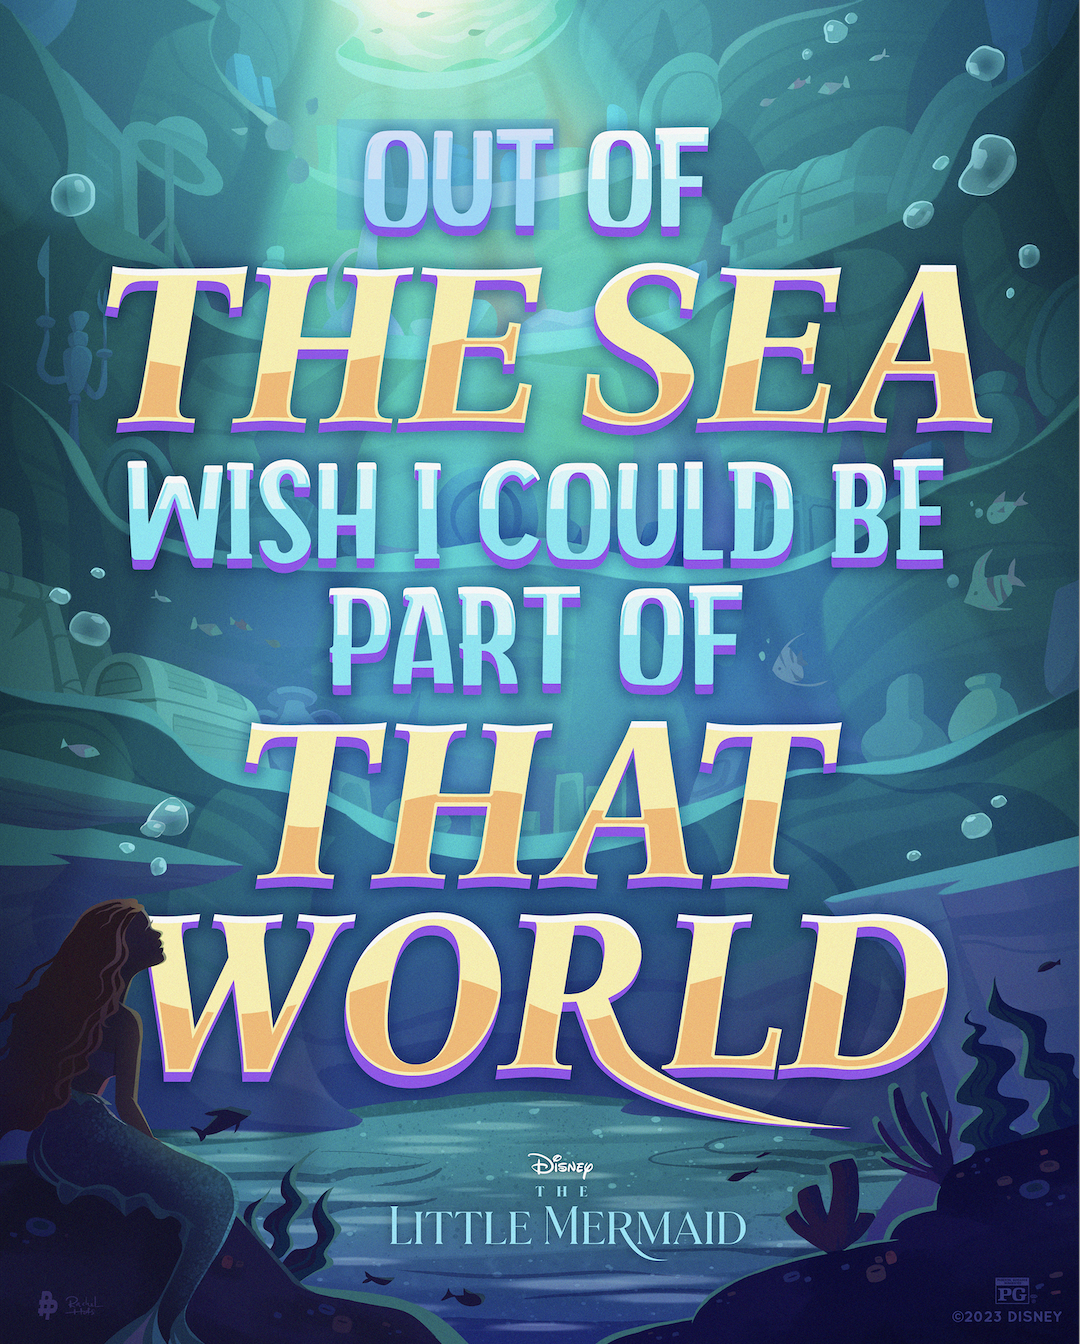 Artwork by Disney Studios – The Little Mermaid